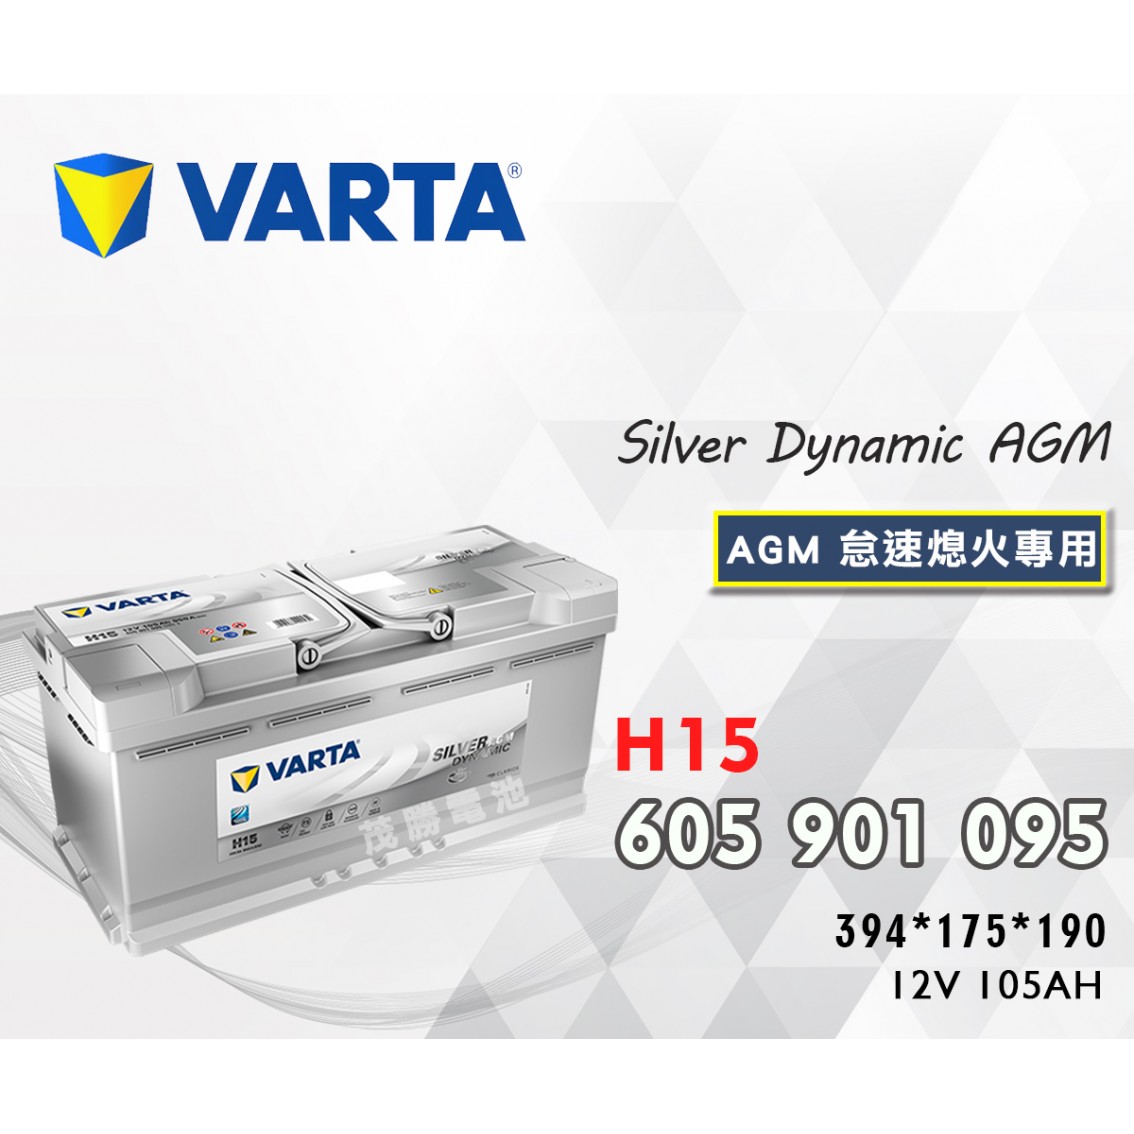 H15-605901095-LN6-AGM